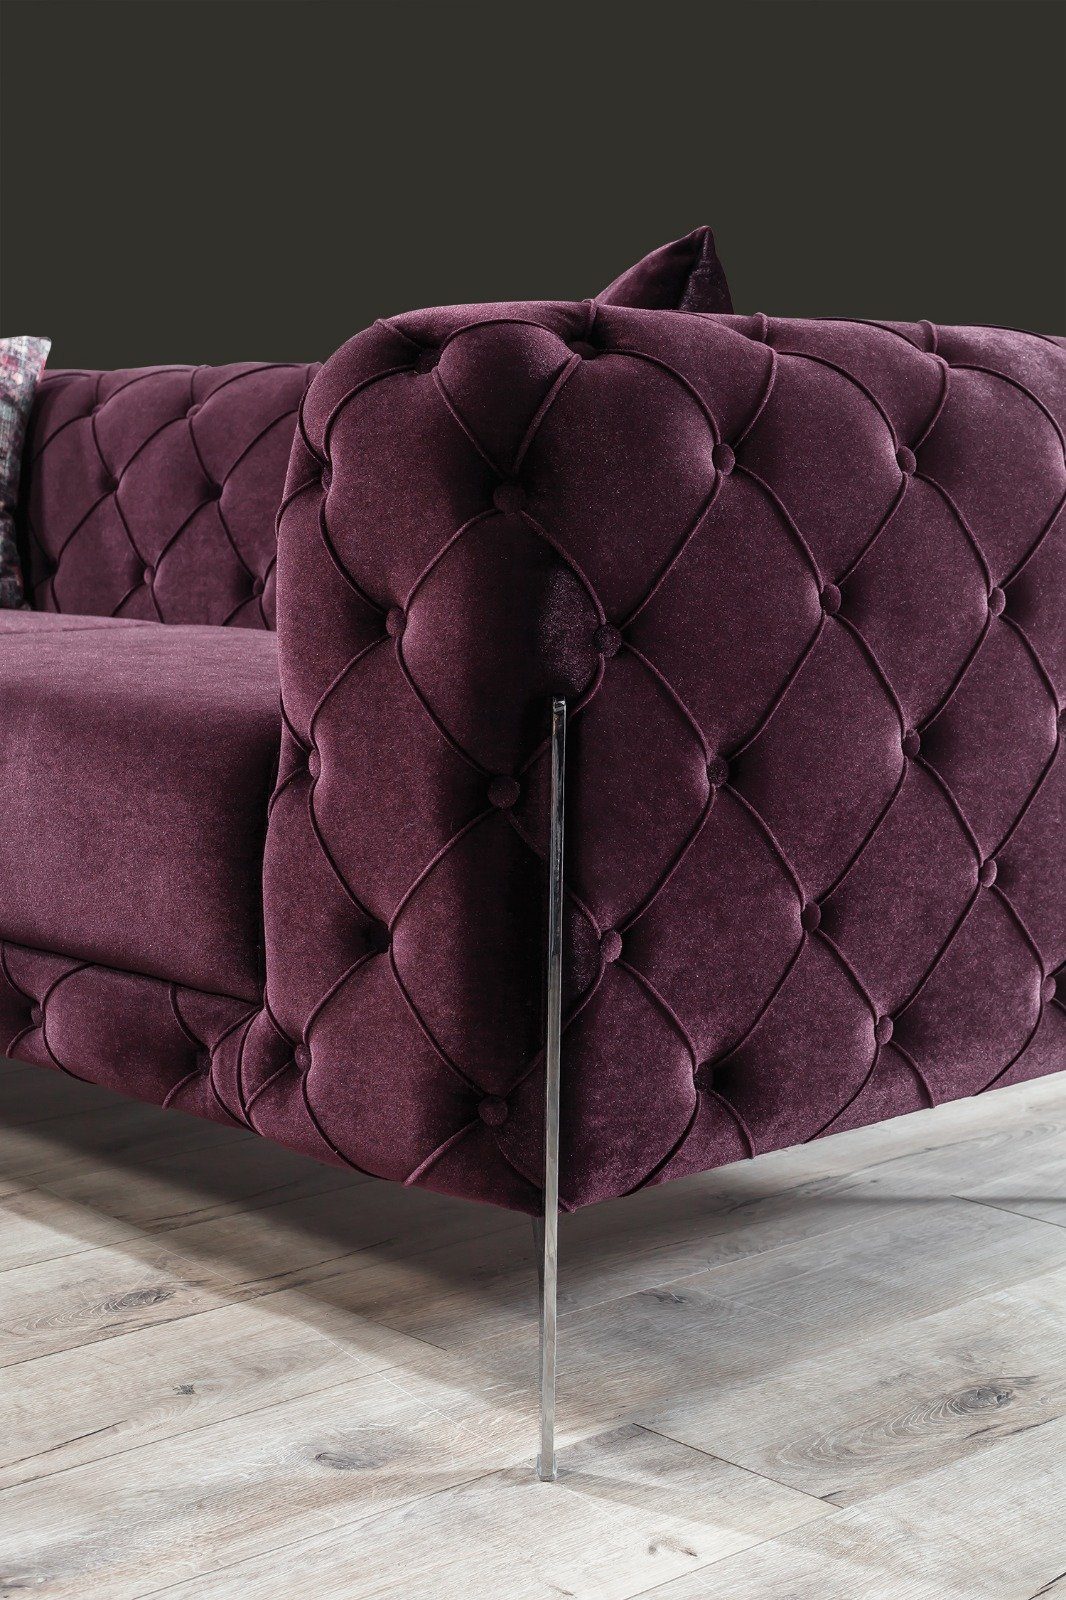 Villa Möbel Sofa Bari, 1 Turkey, Violett in (100% Quality Made 3-Sitzer, Polyester) Luxus-Microfaser Stk